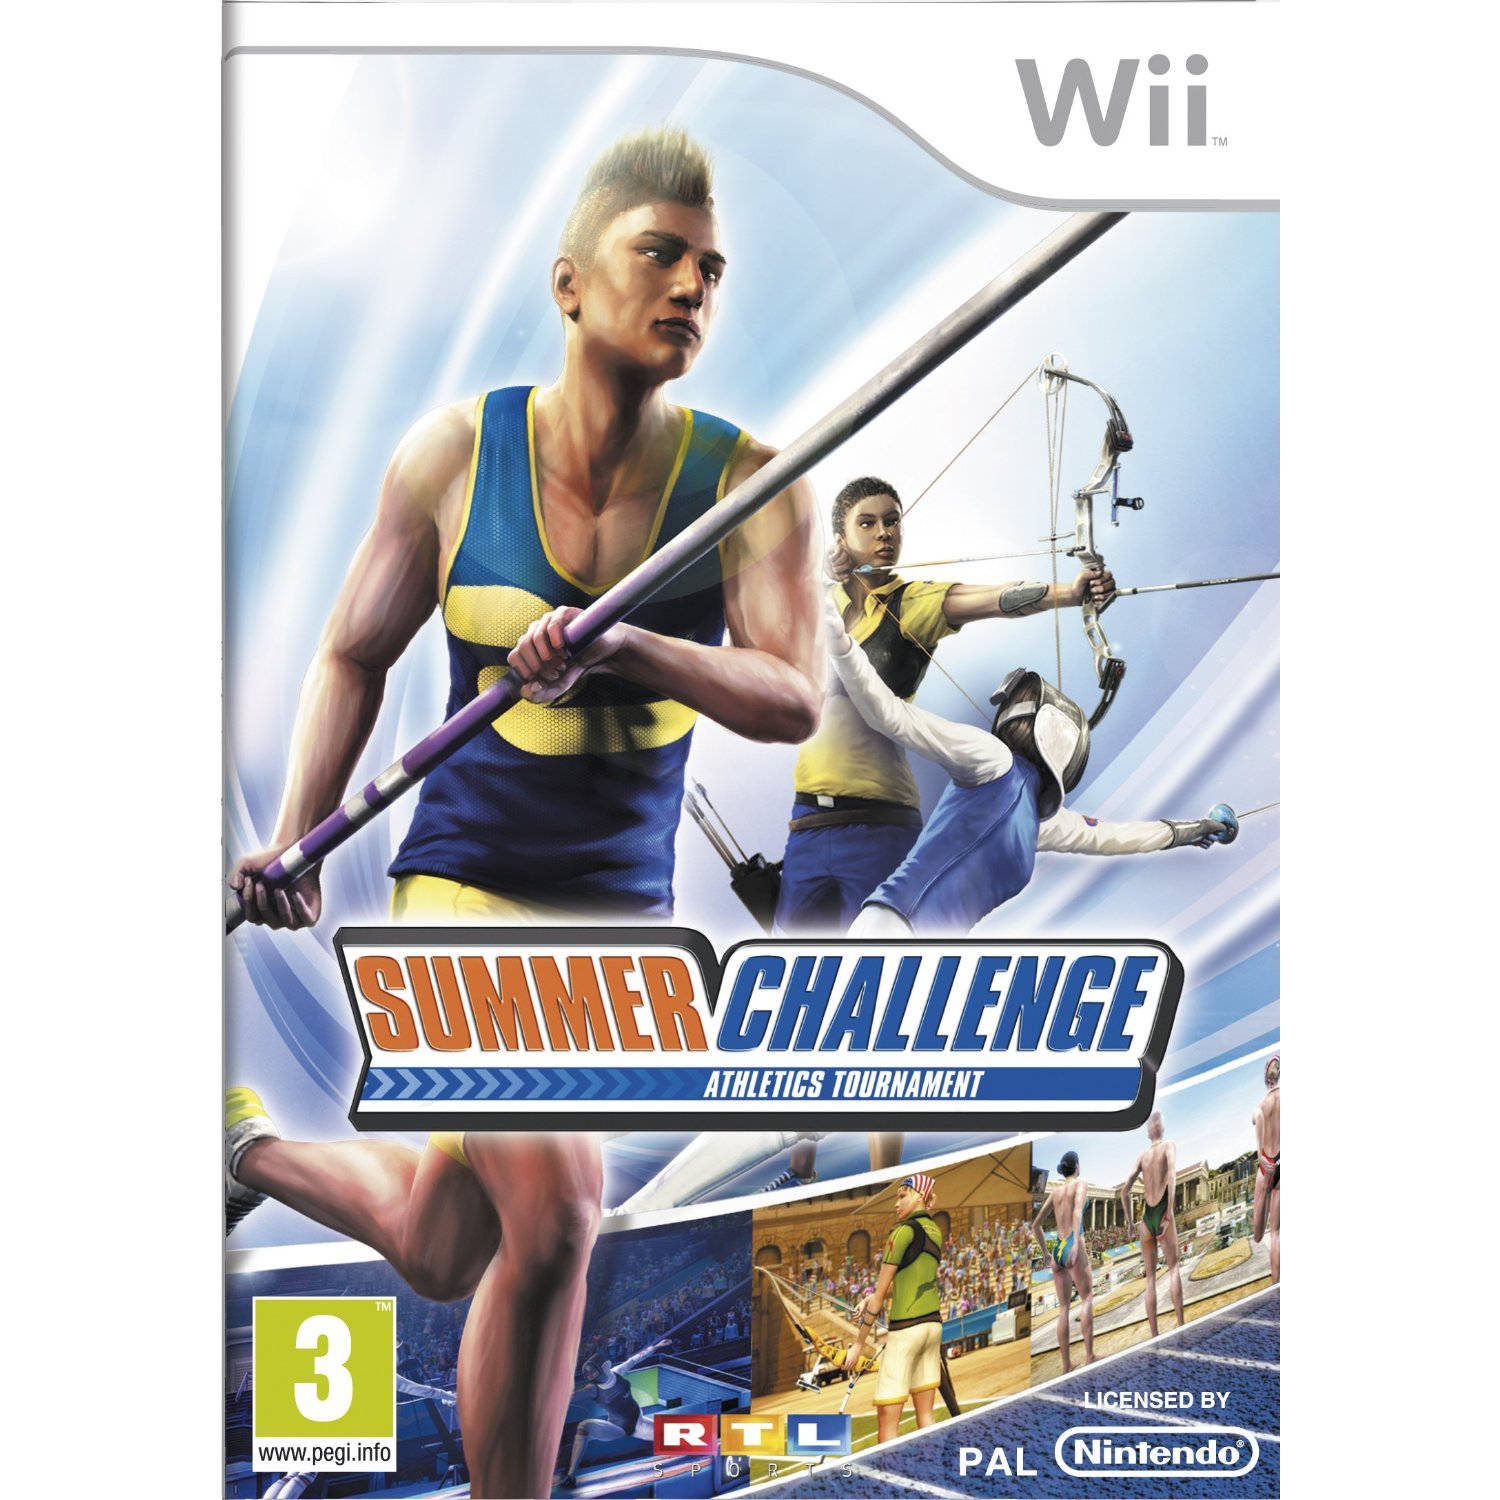 Nintendo Summer Challenge Athletics Tournament Wii